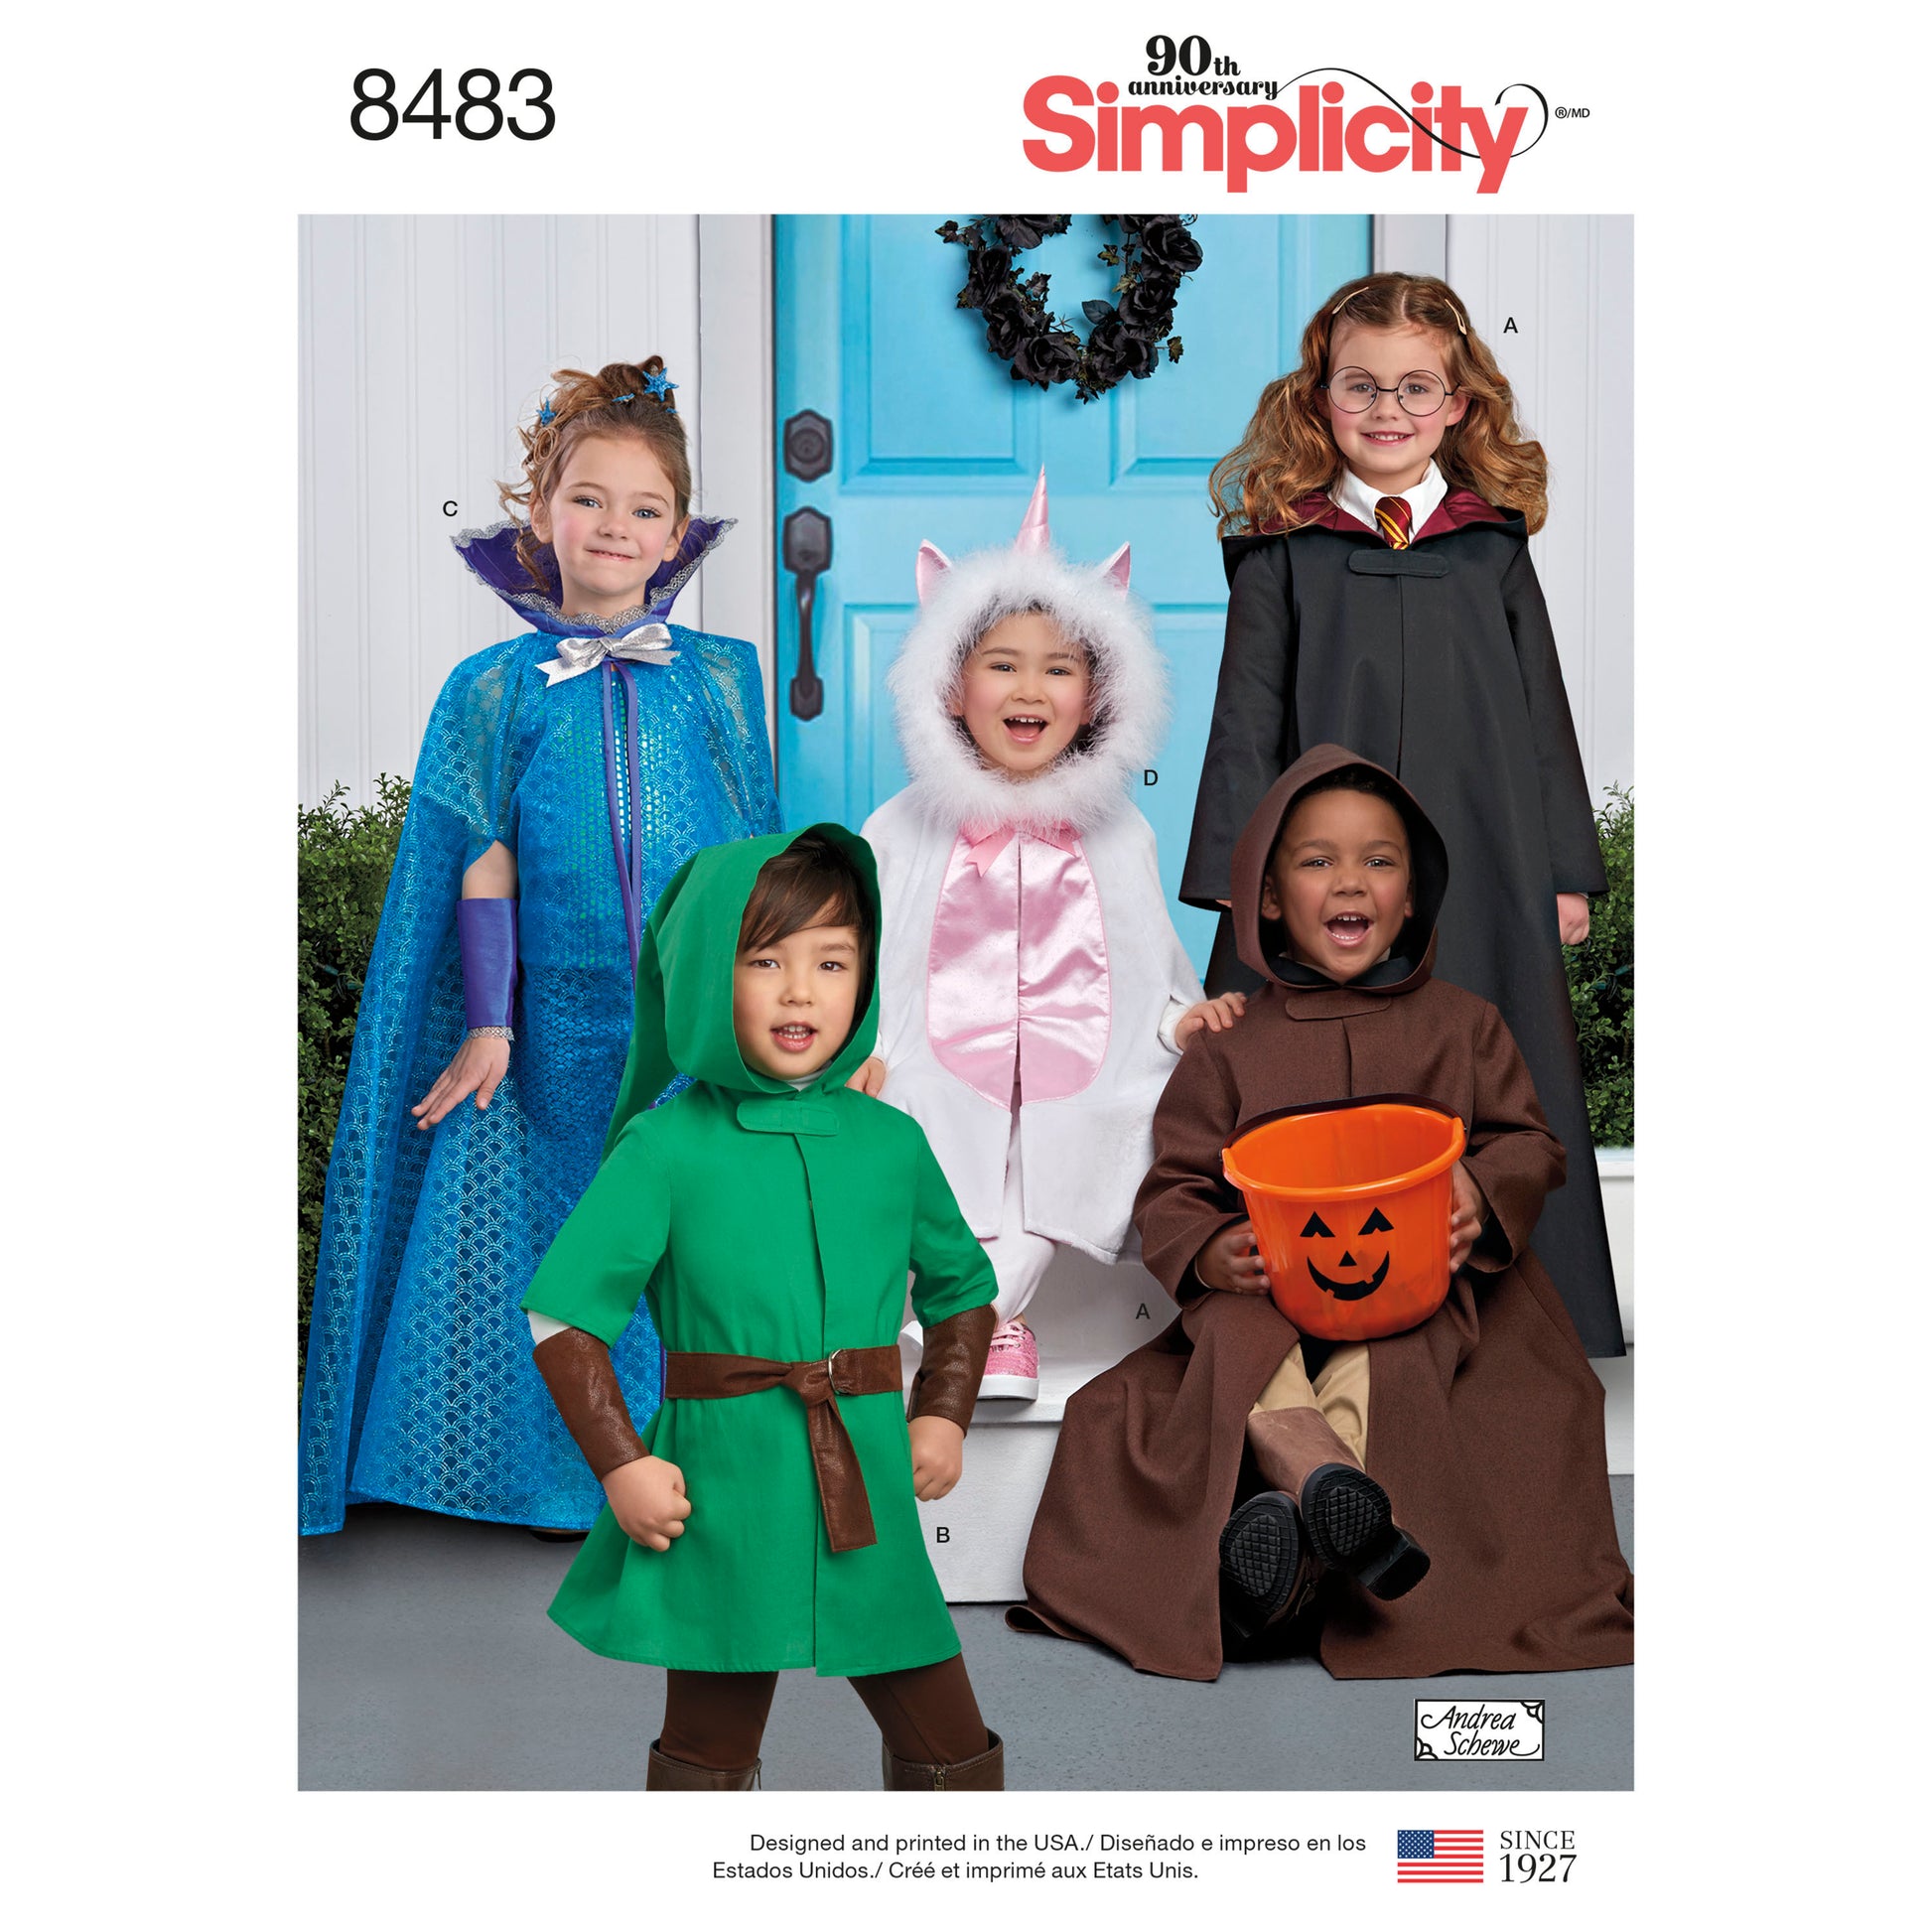 Symönster Simplicity 8483 - Utklädningskläder - Maskerad Sim | Bild 7